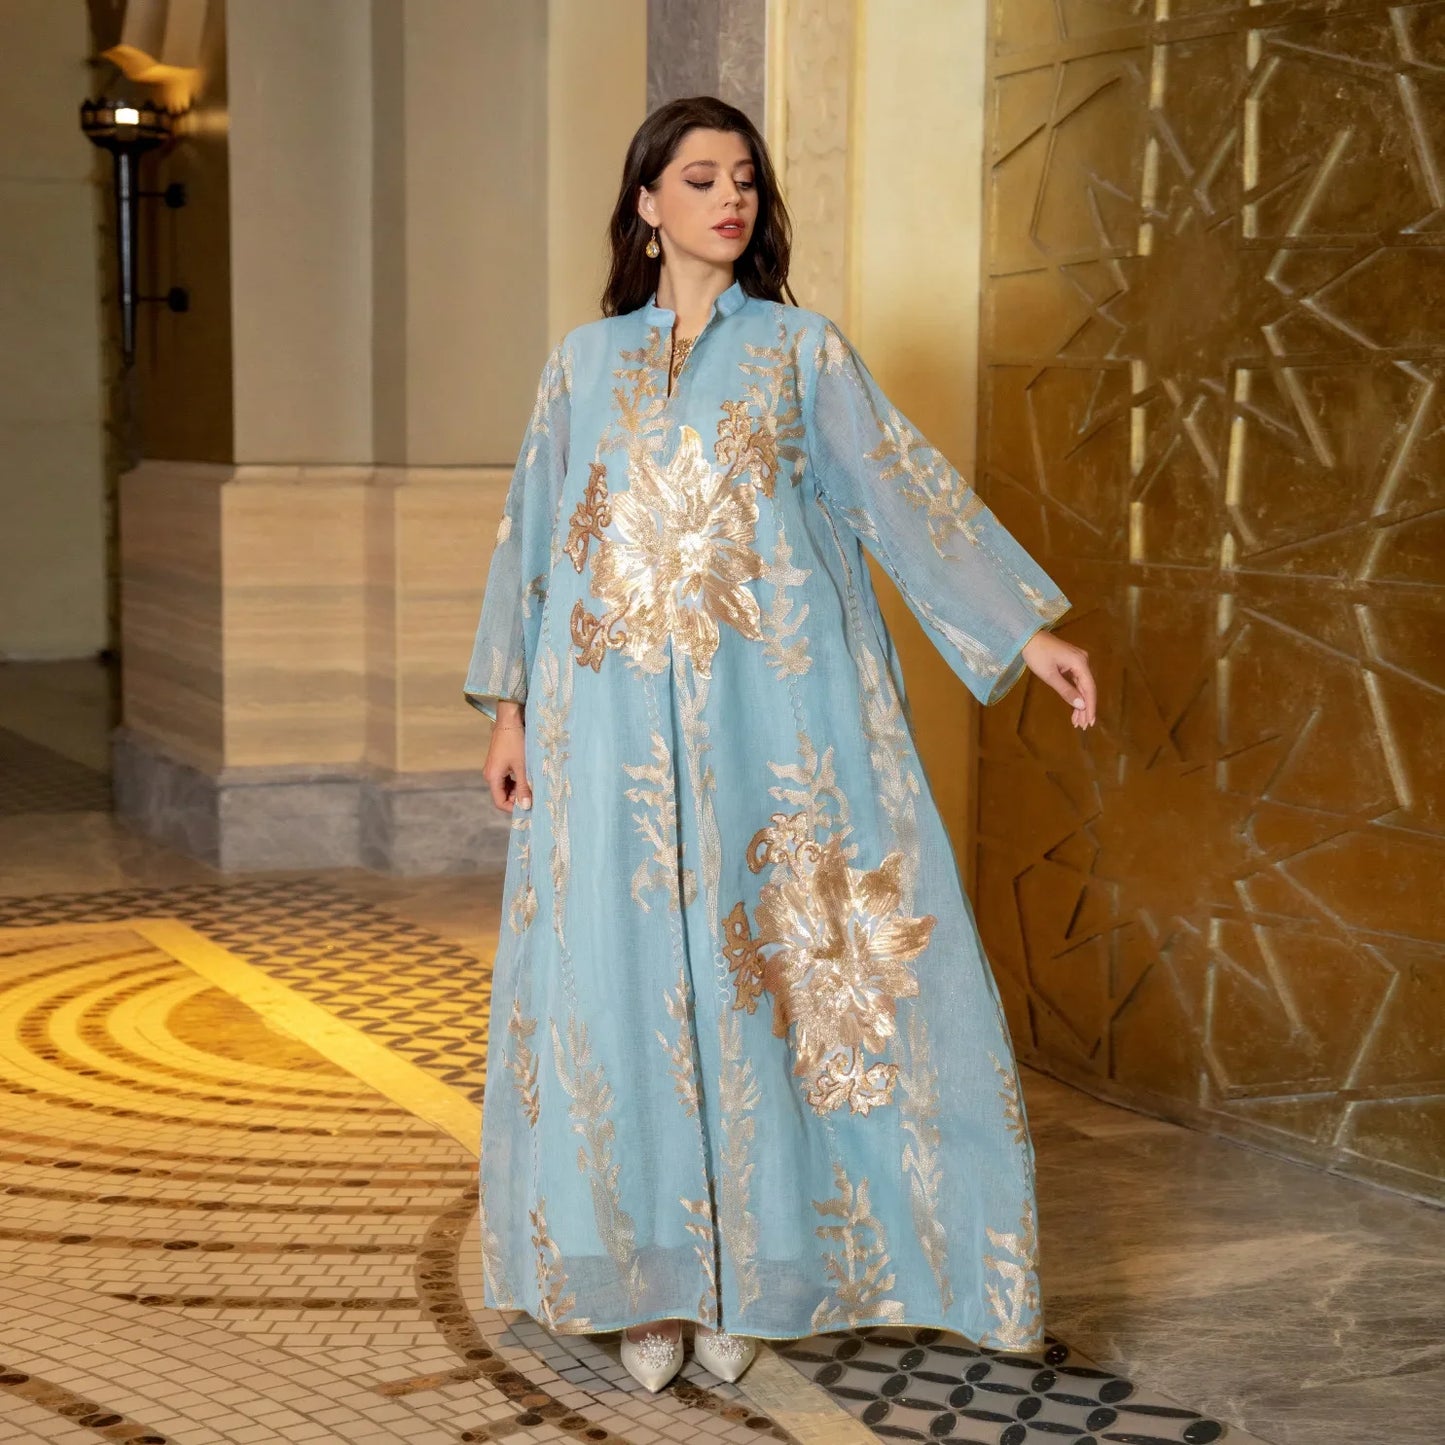 Zigui élégant caftan, robe de soirée or broderie paillettes bleu clair en mousseline de soie